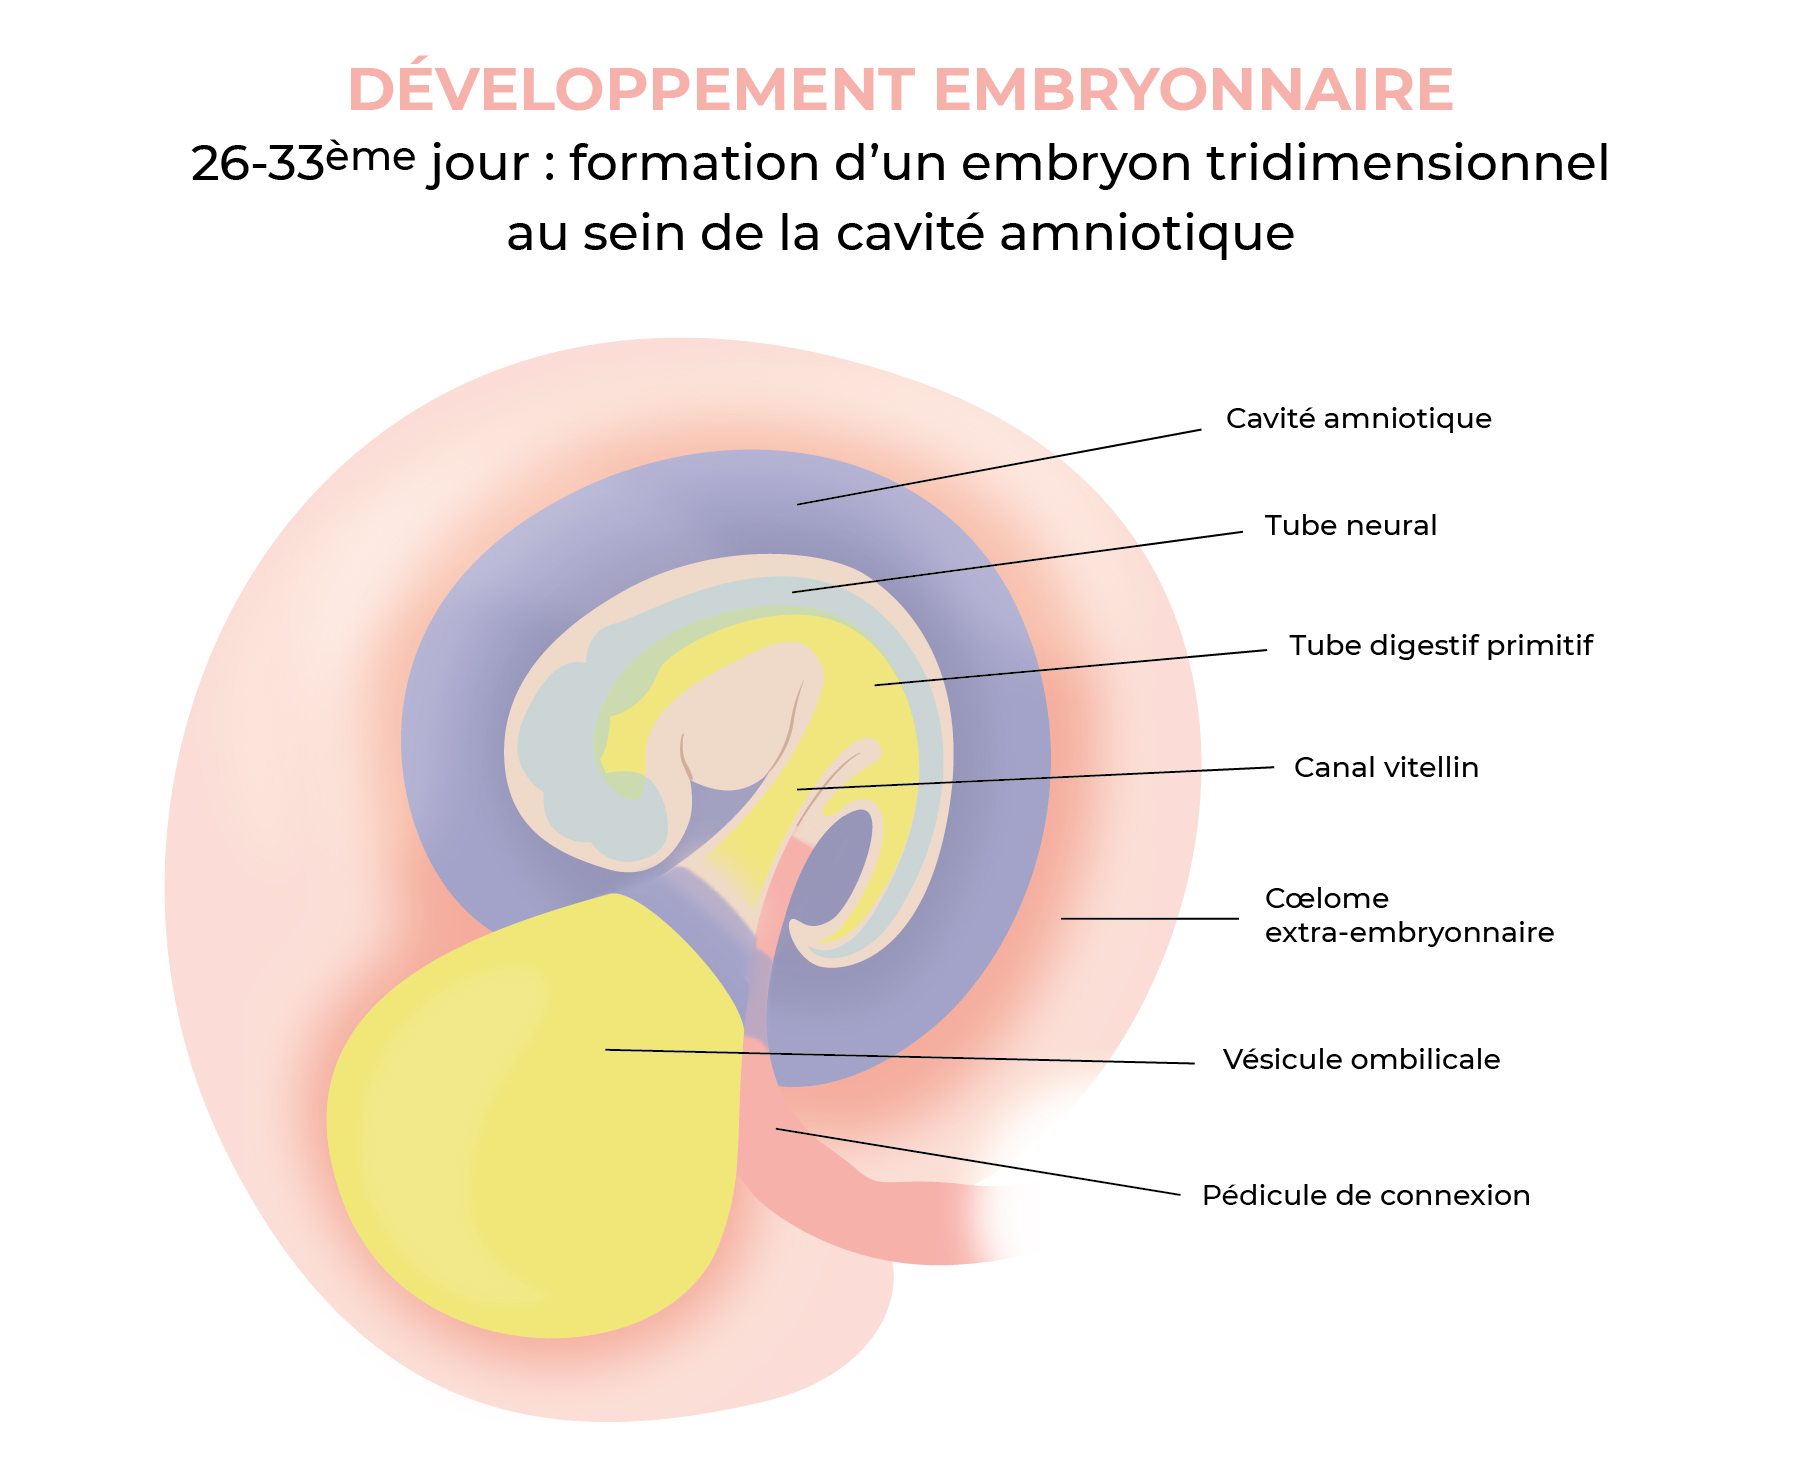 26-33ème jour : embryon tridimensionnel